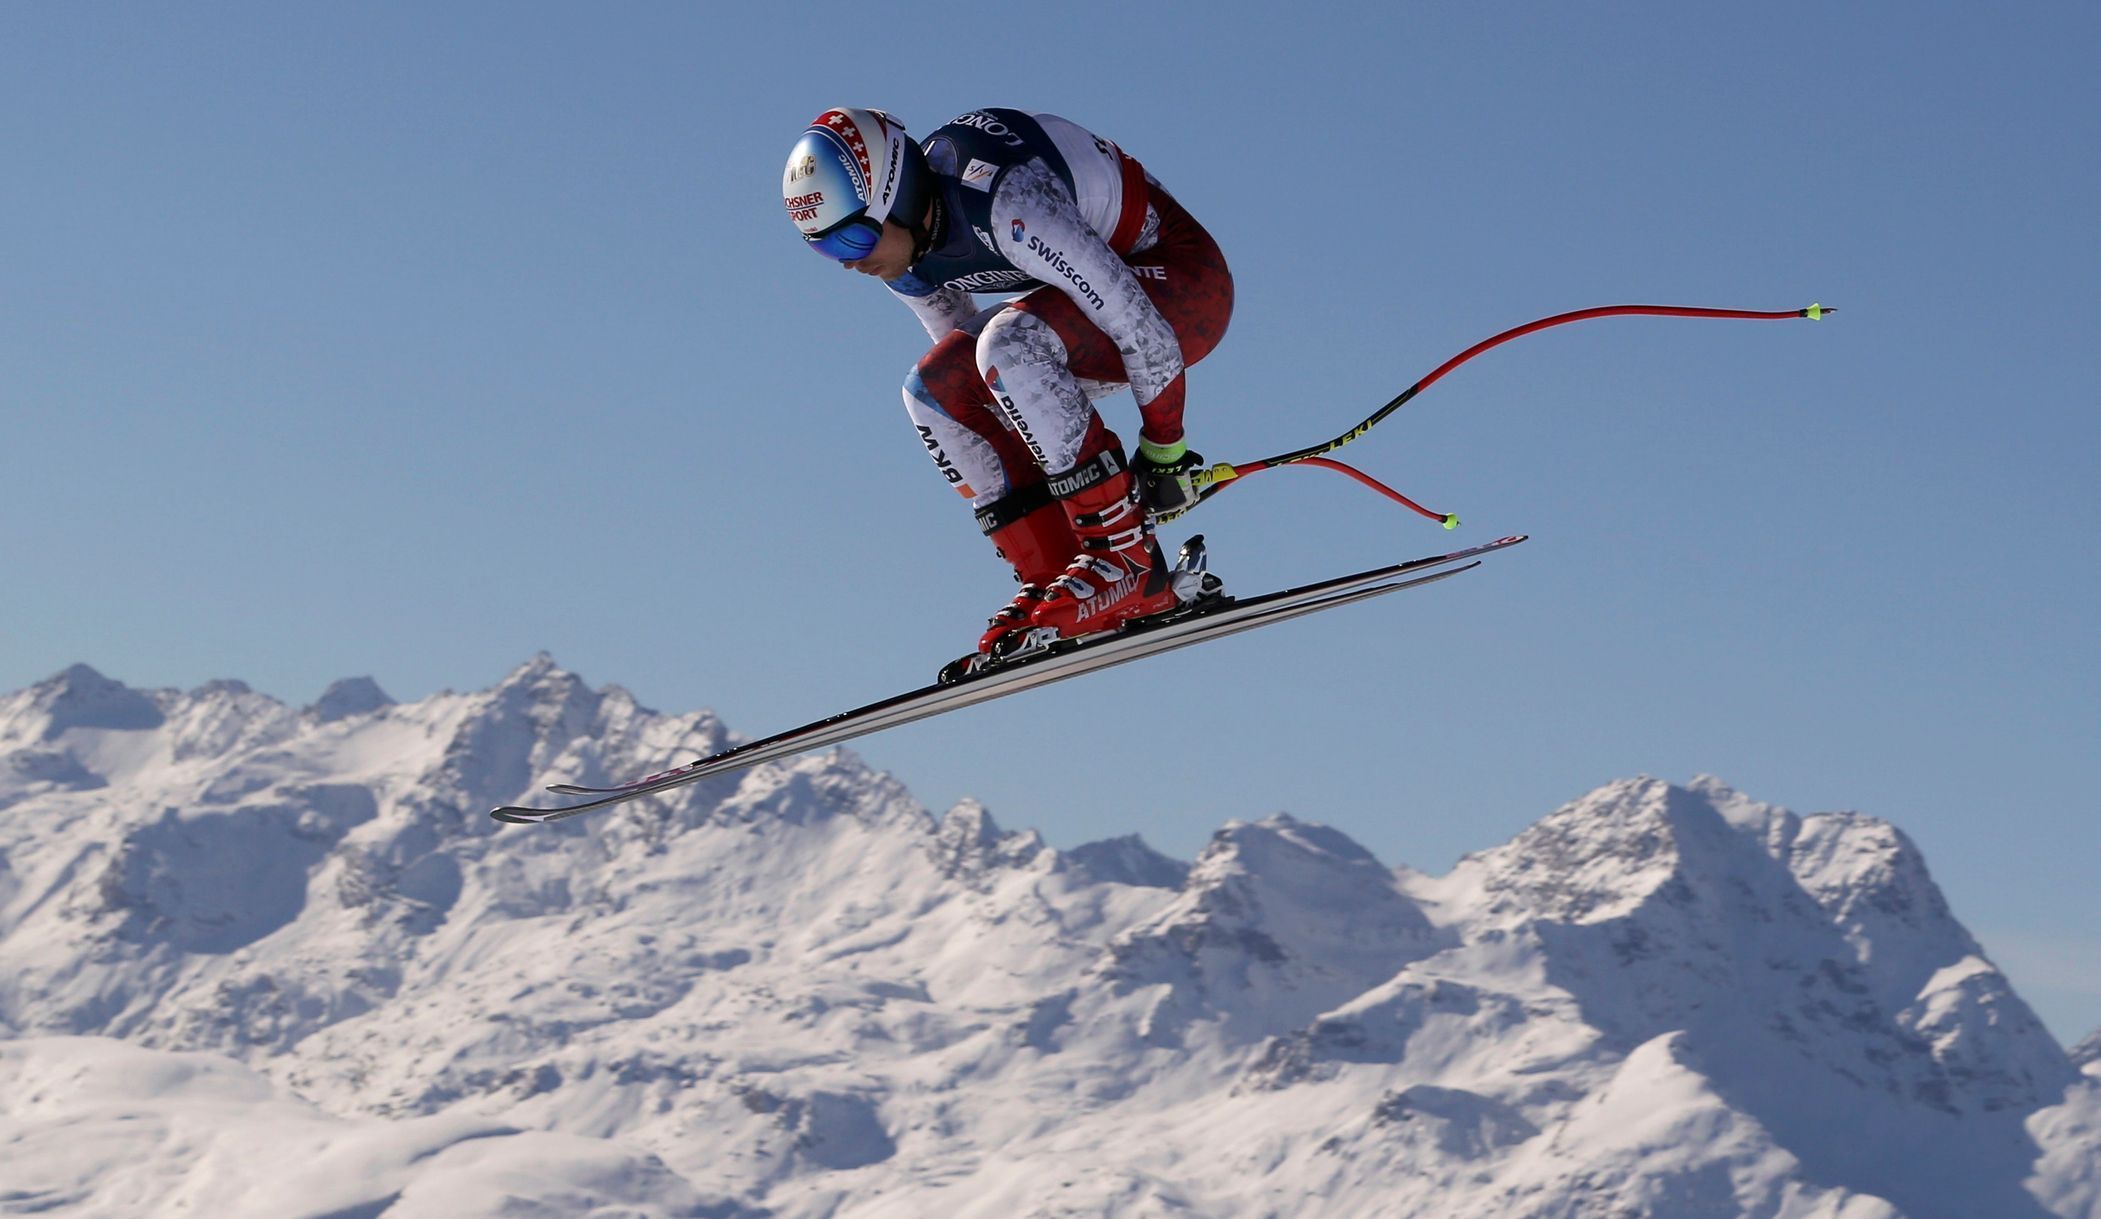 MS 2017 ve sjezdovém lyžování ve Svatém Mořici, kombinace mužů: Mauro Caviezel